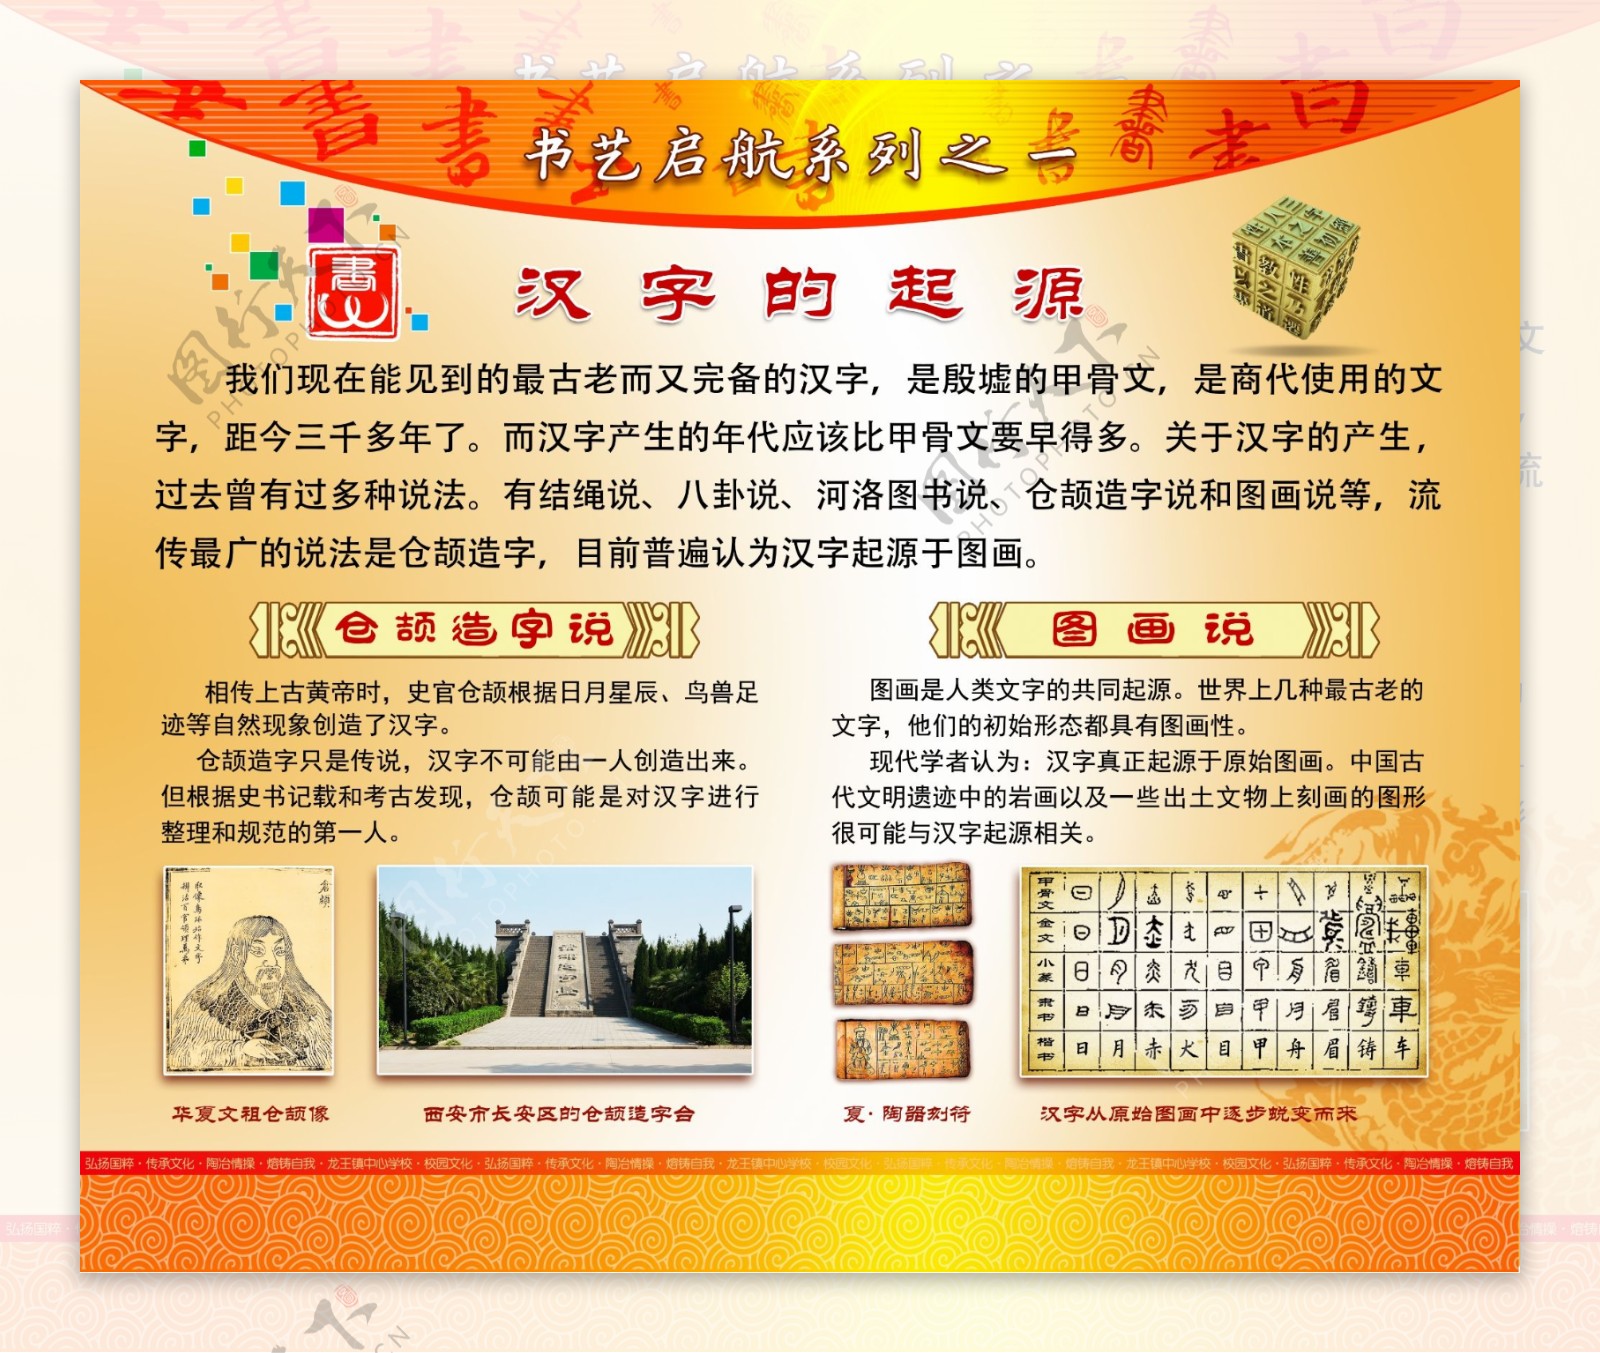 书法艺术汉字的起源